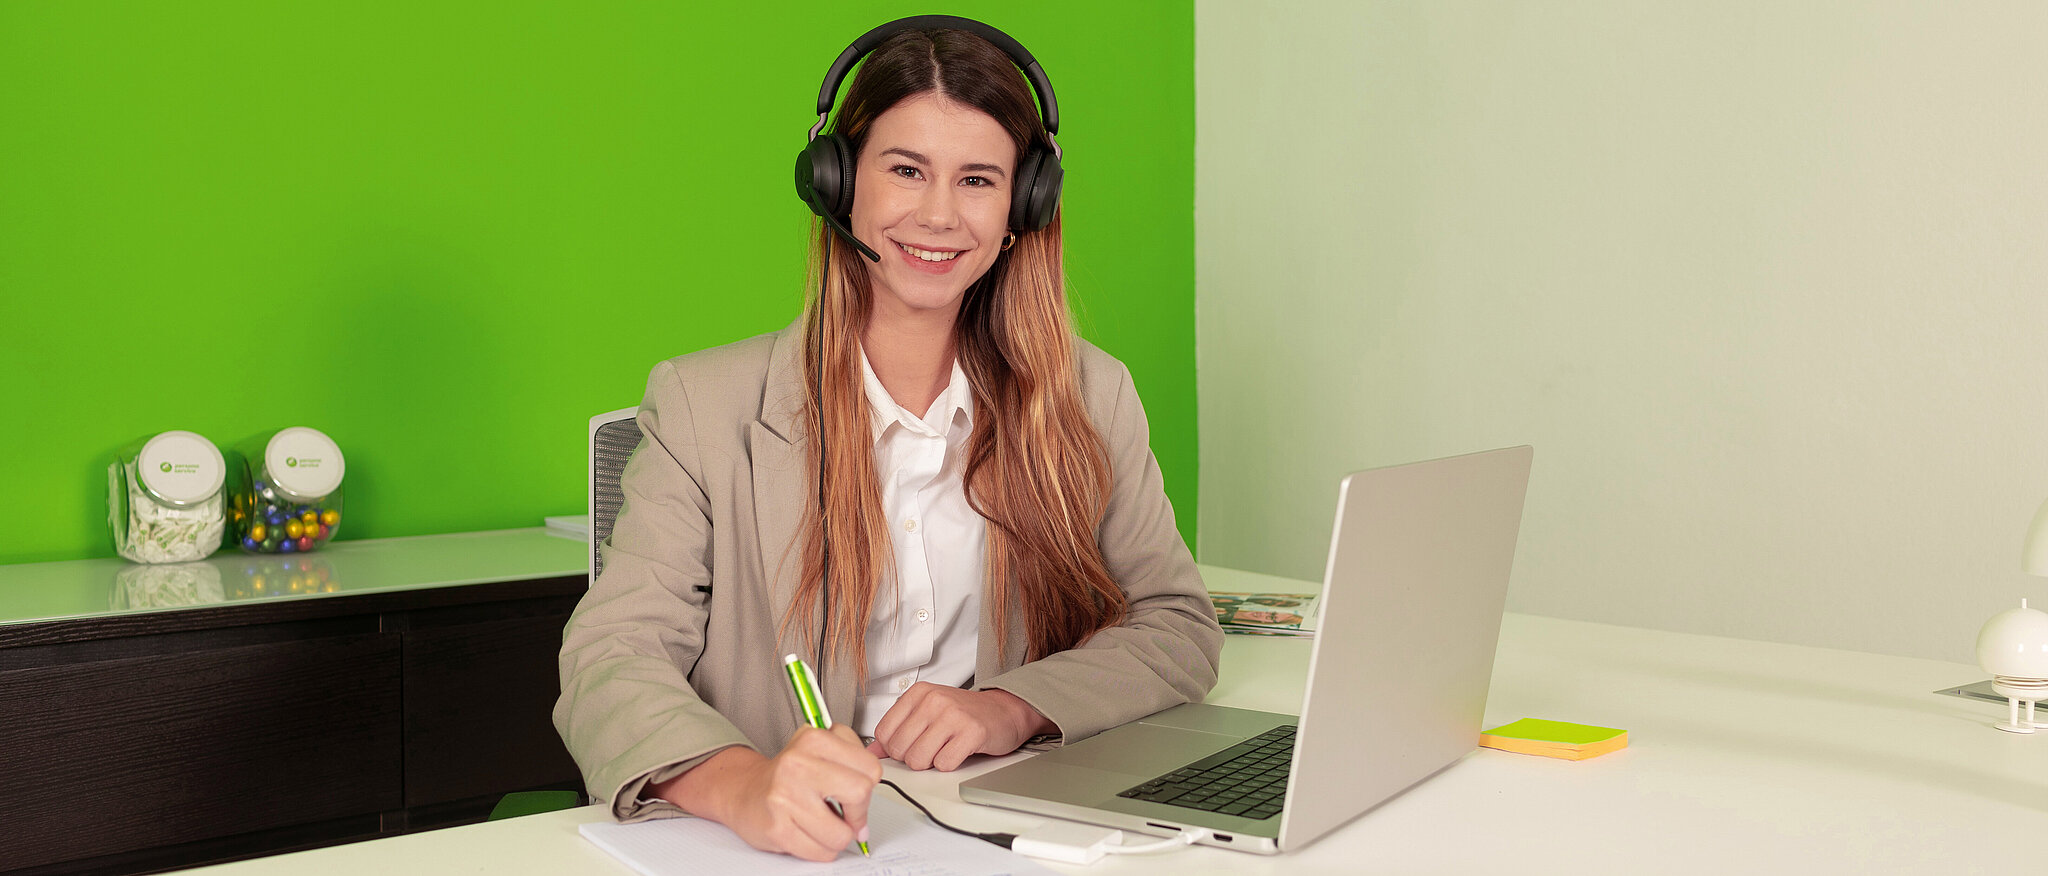 Mitarbeiterin persona service Spanien am Laptop mit Headset